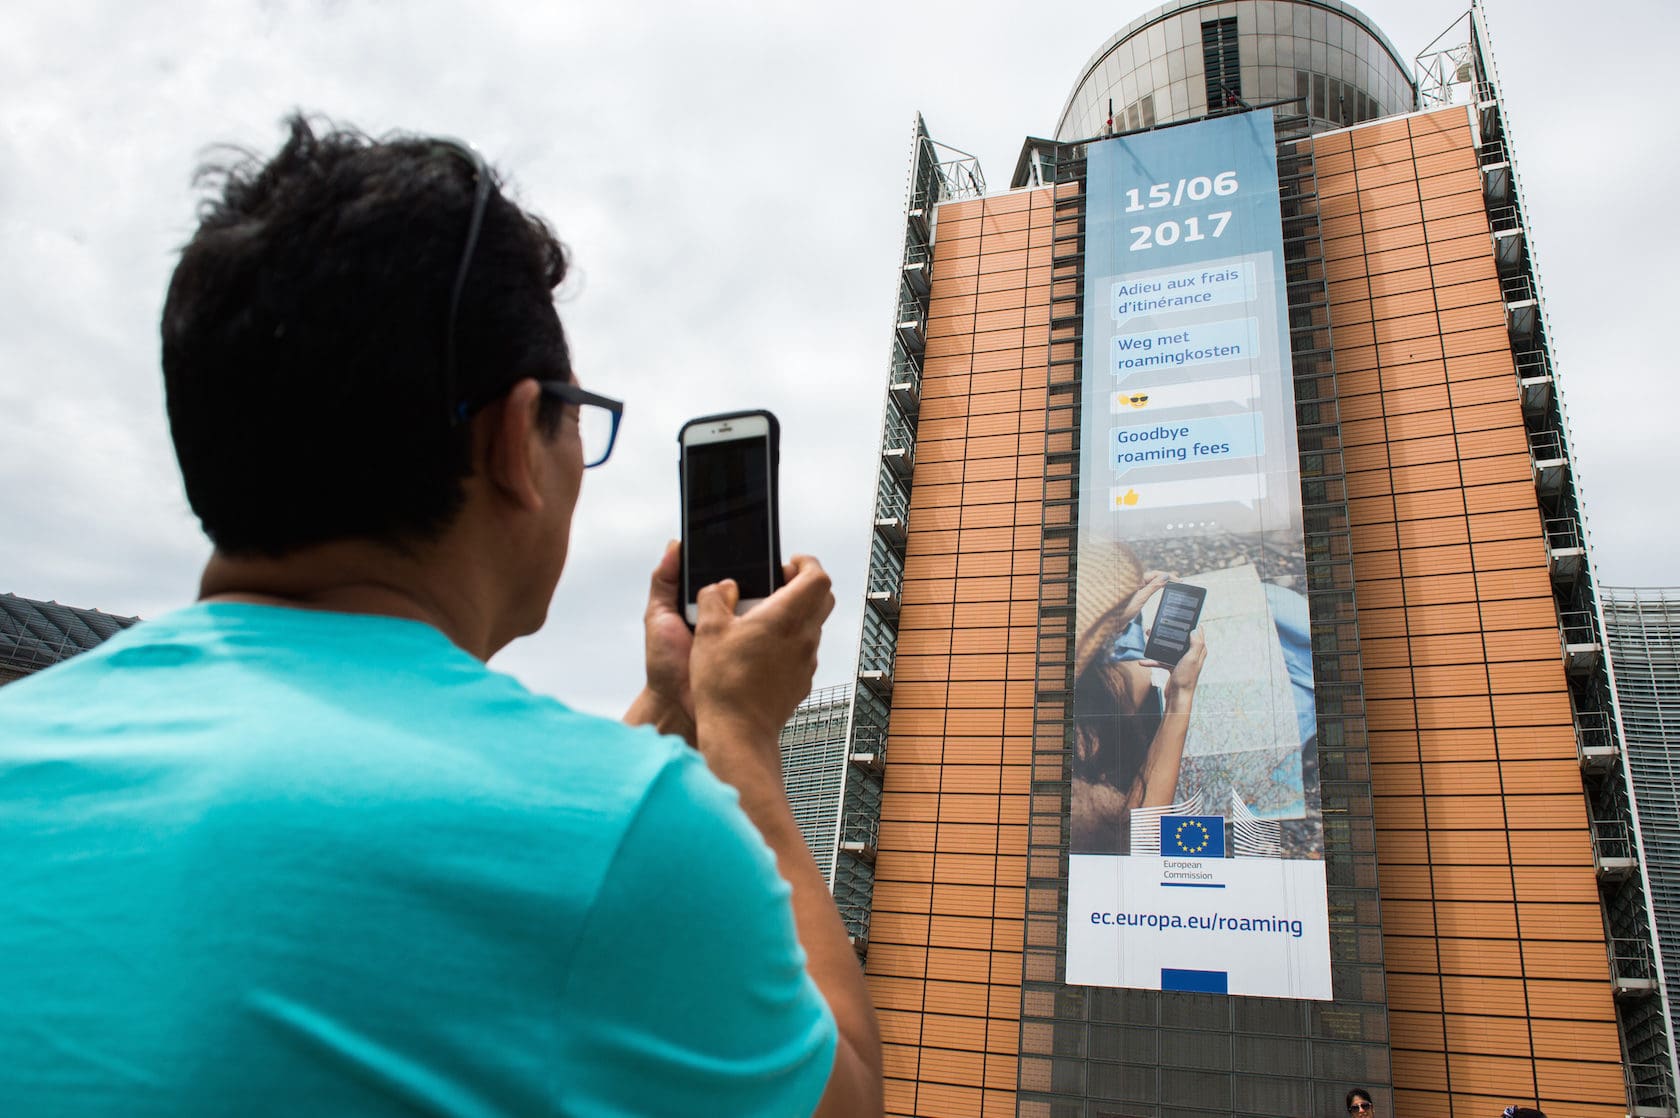 La Commission européenne à Bruxelles s'est parée d'une bannière annonçant la fin du roaming dans l'UE. (Photo Mauro Bottaro / EC Audiovisual Service / cc)